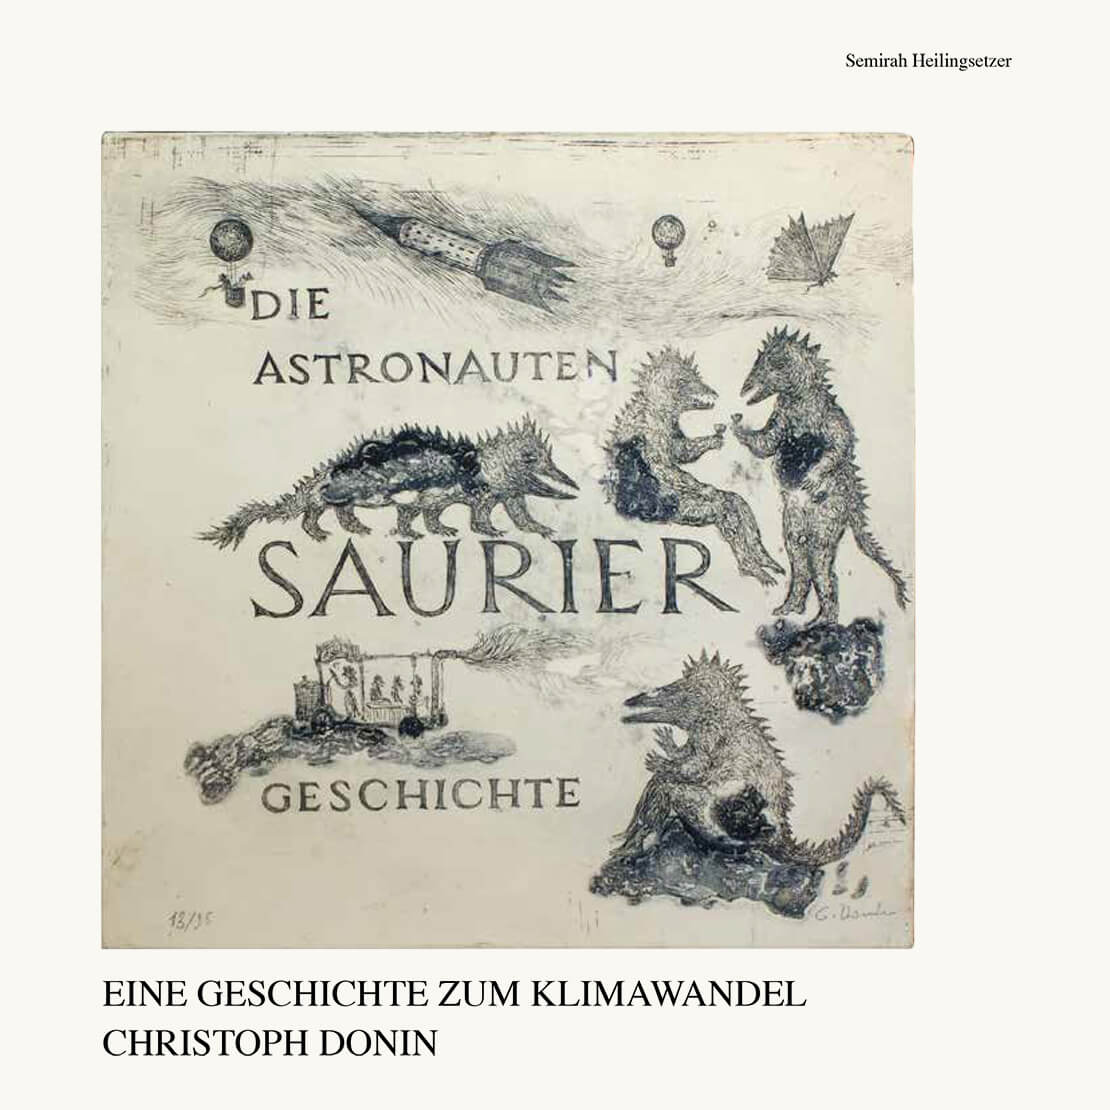 Christoph Donin: Die Astronauten-Saurier Geschichte. Eine Geschichte zum Klimawandel, Semirah Heilingsetzer (Hg.), 2020 